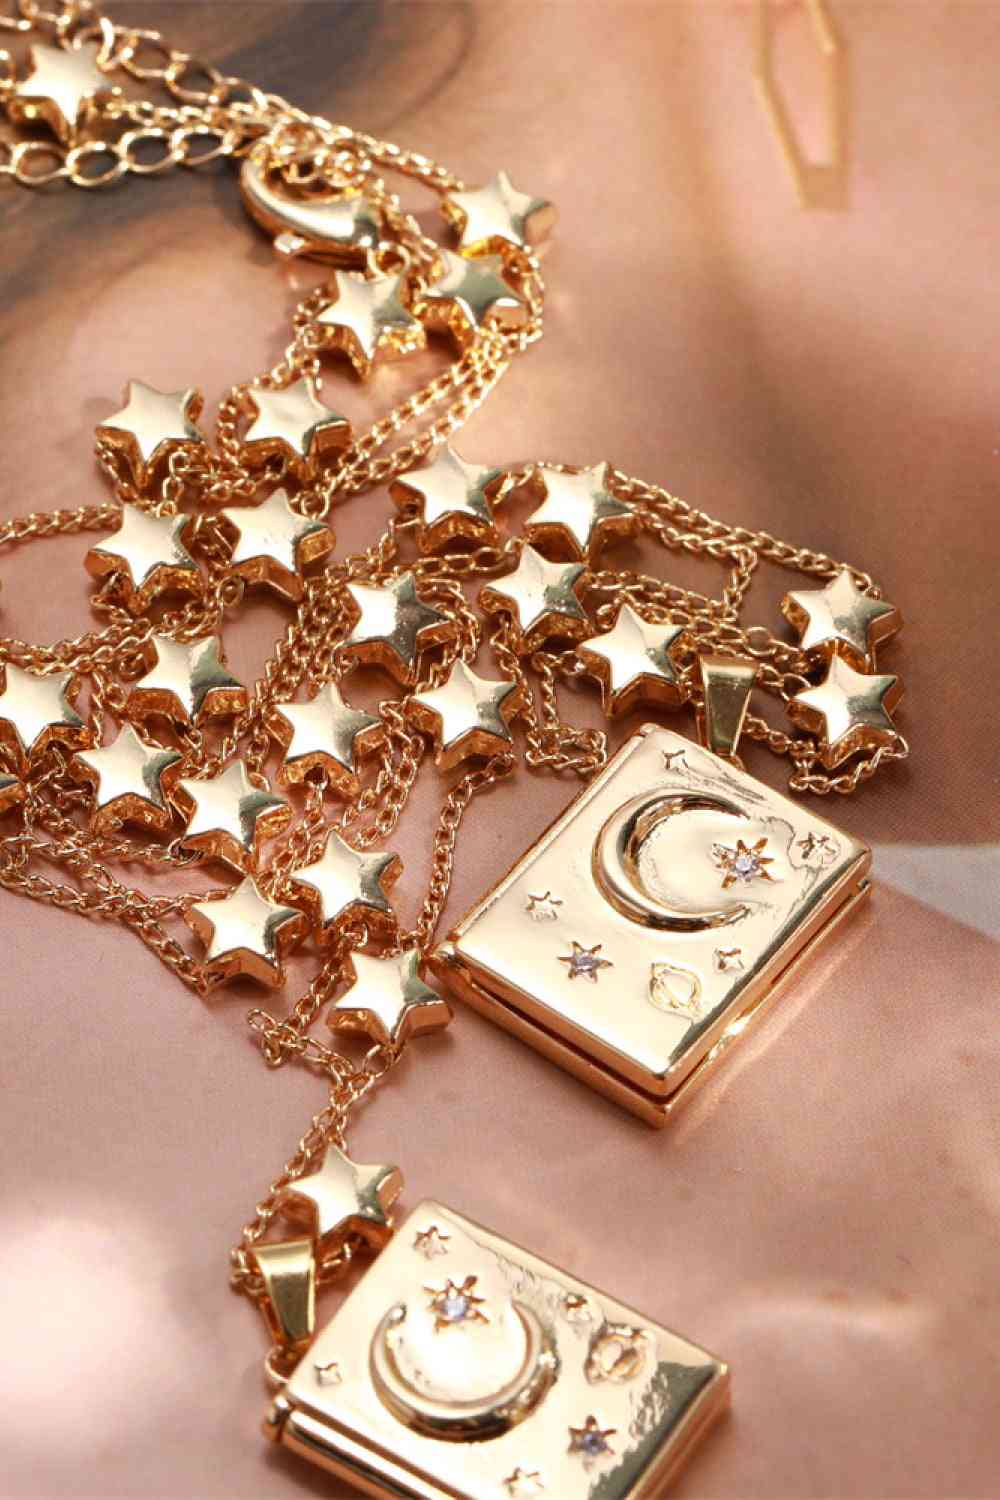 Stern- und Mond-Kupfer-Halskette mit 14-Karat-Vergoldung